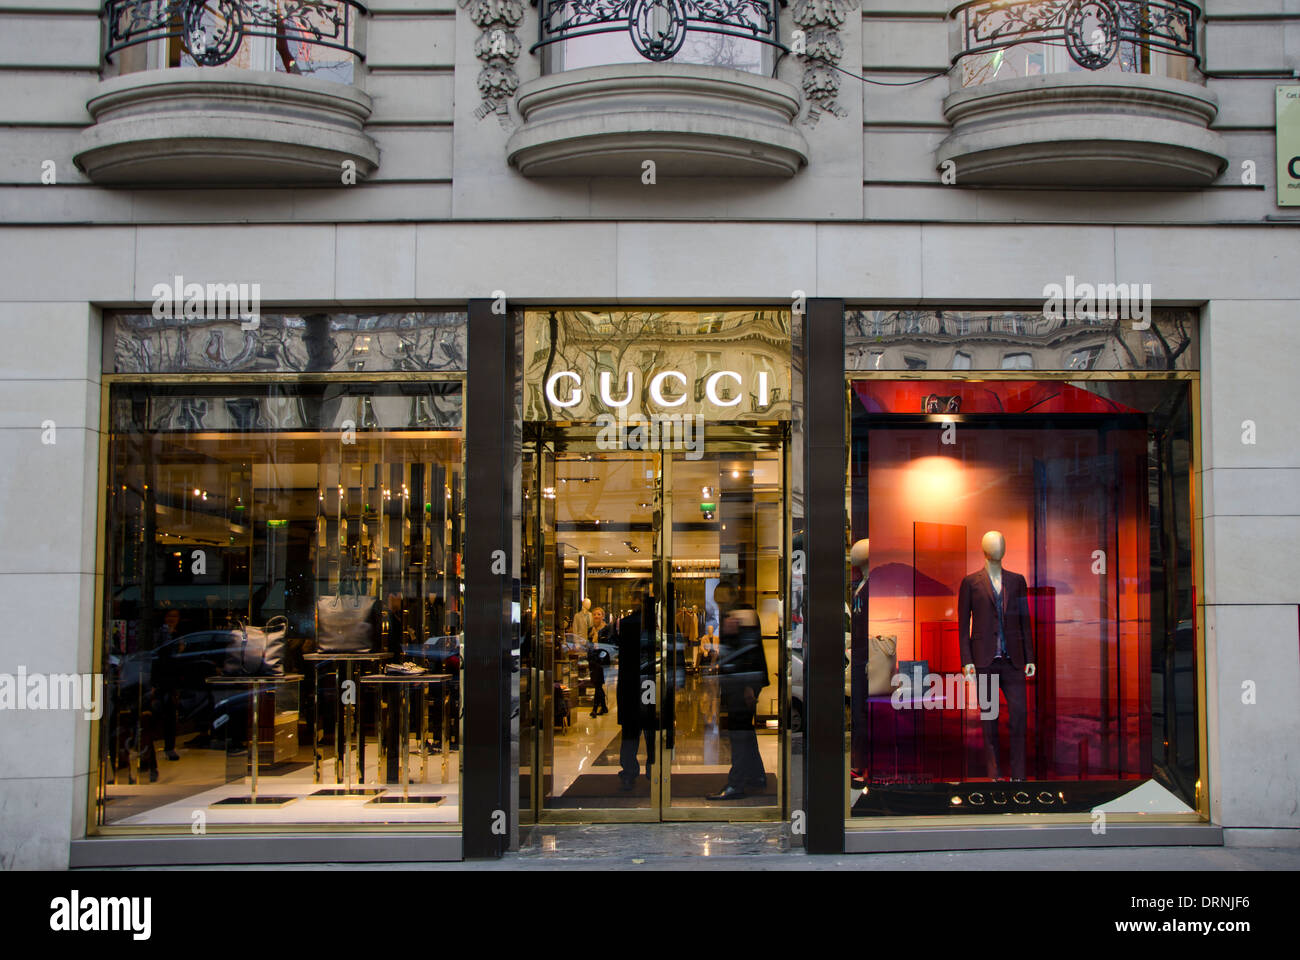 Facciata di una moda italiana Gucci store, il negozio a Parigi Francia Foto Stock